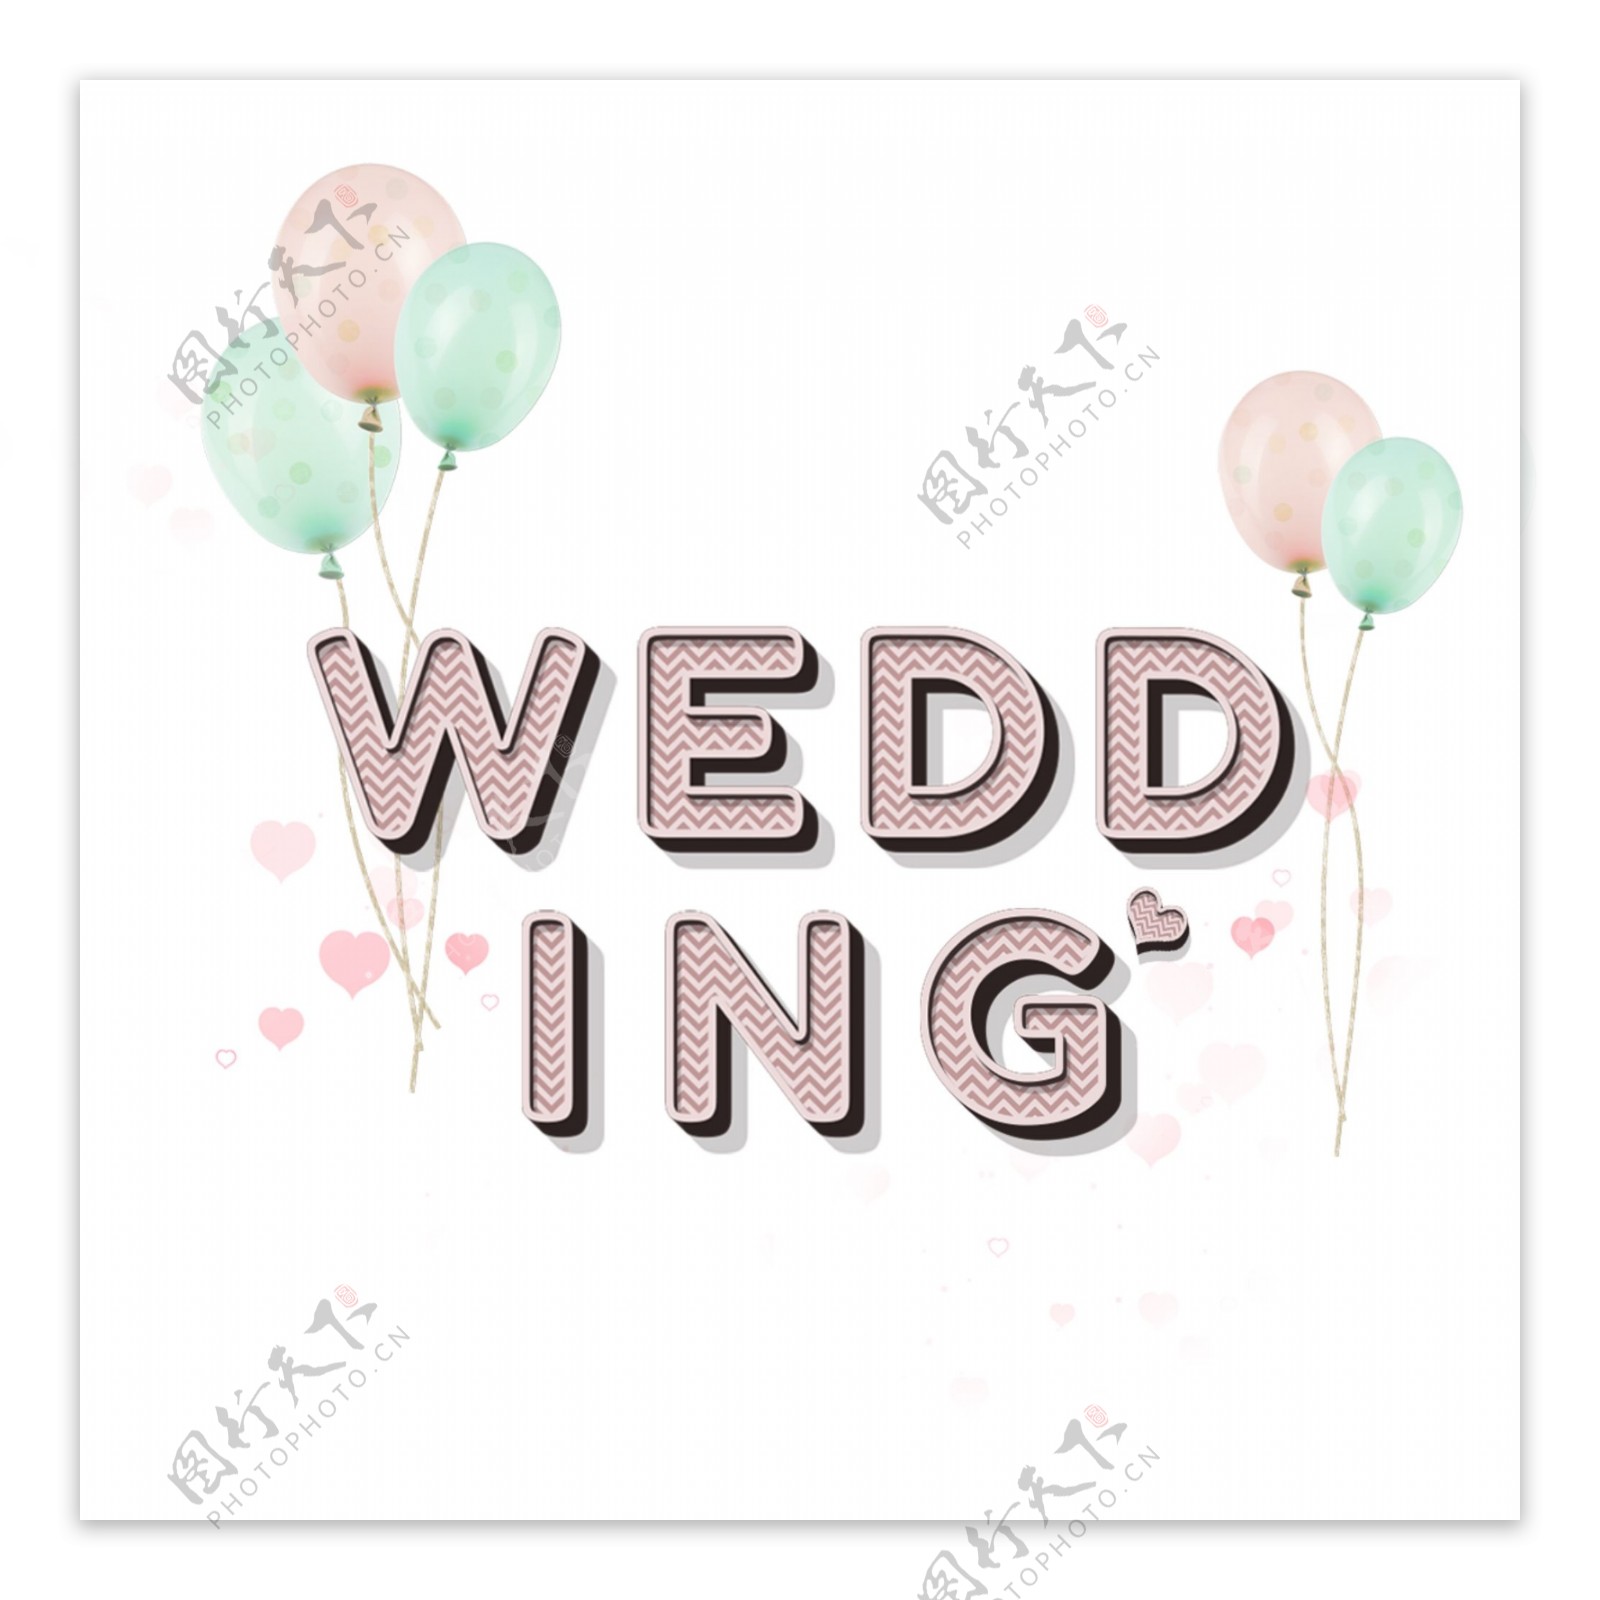 可爱婚礼字体设计